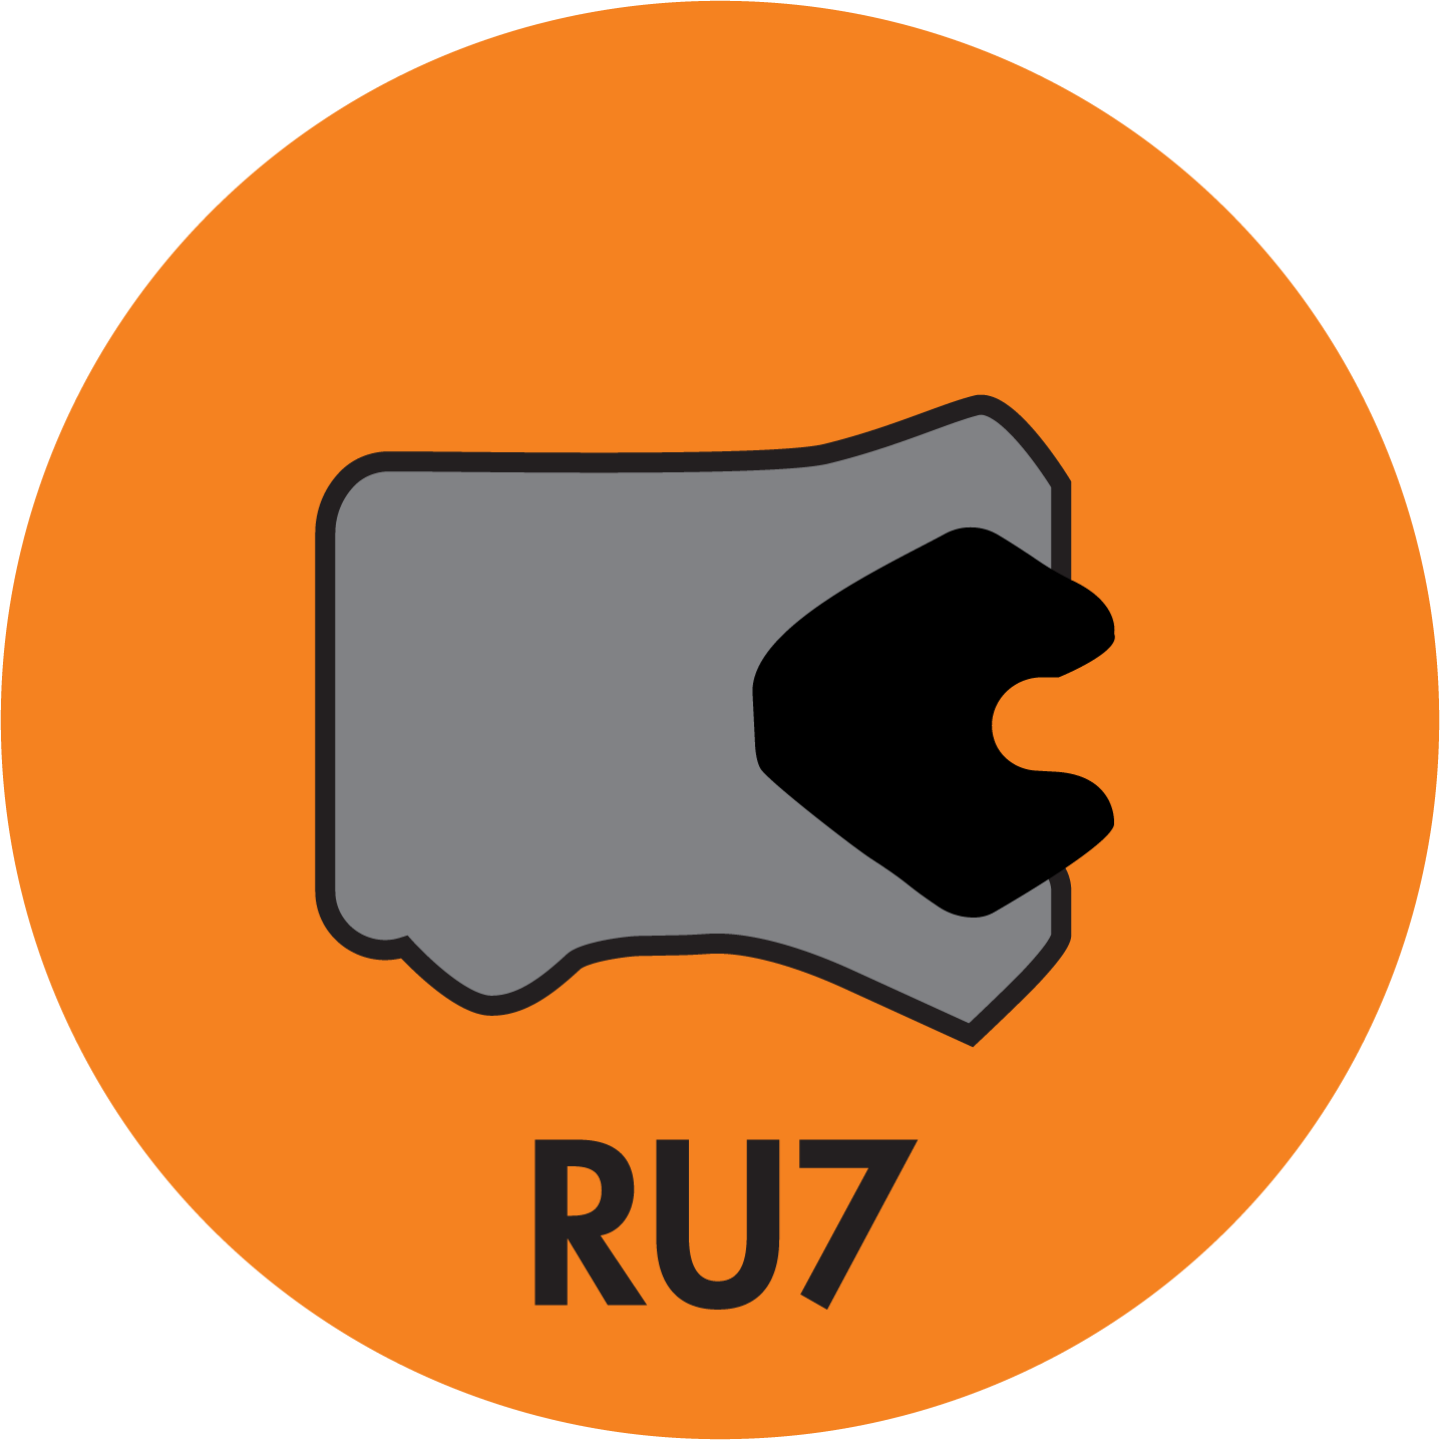 RU7 TWIN LIP ROD (LOADED) U-CUP (AU+NBR) - RU7-25001500-375-P92E Image 1